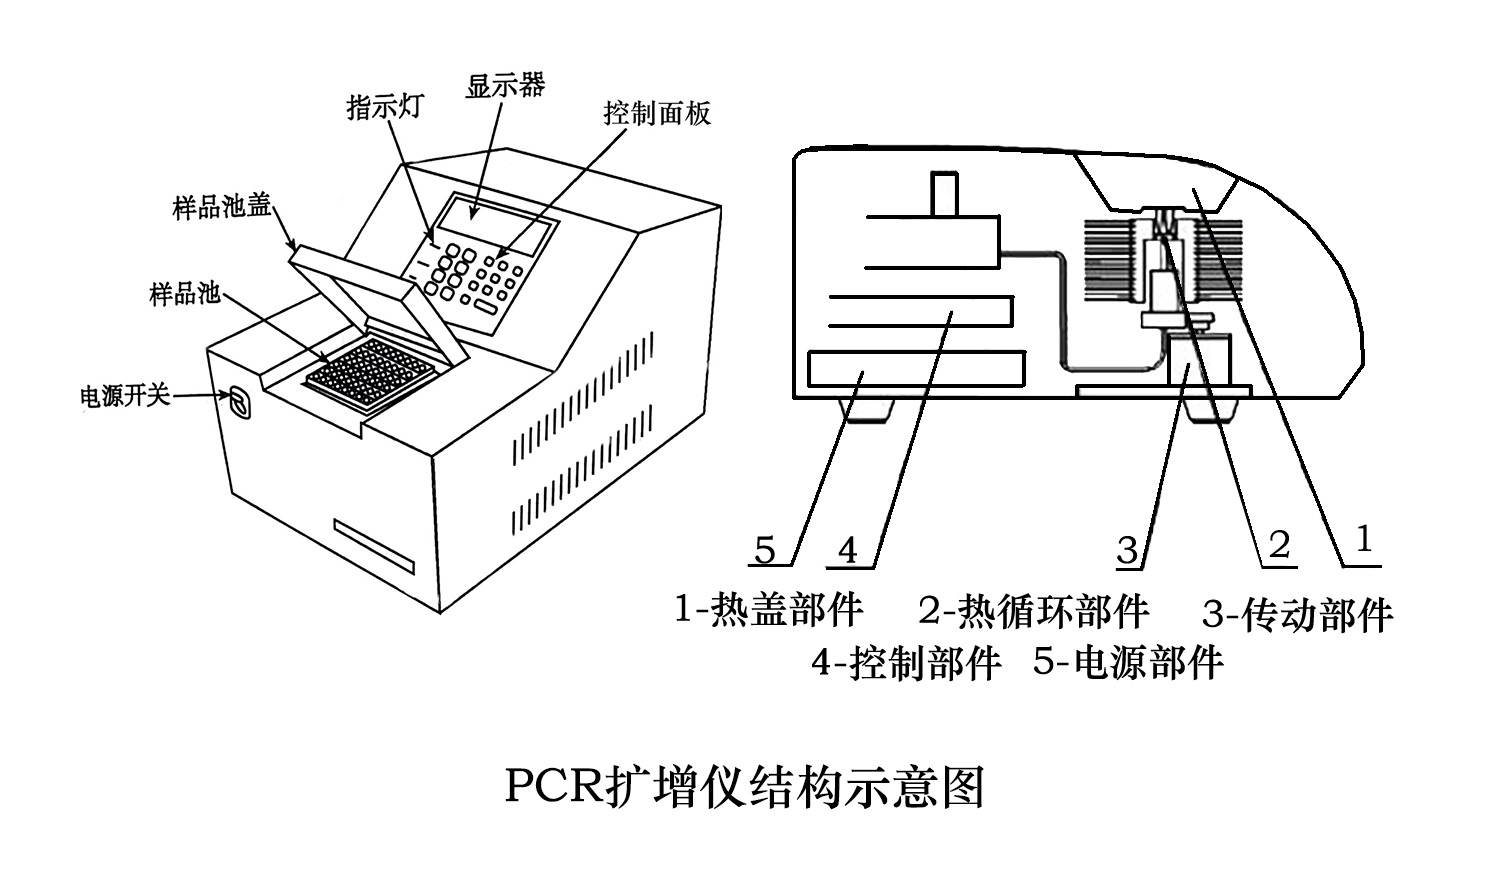 PCR擴增儀結構示意圖